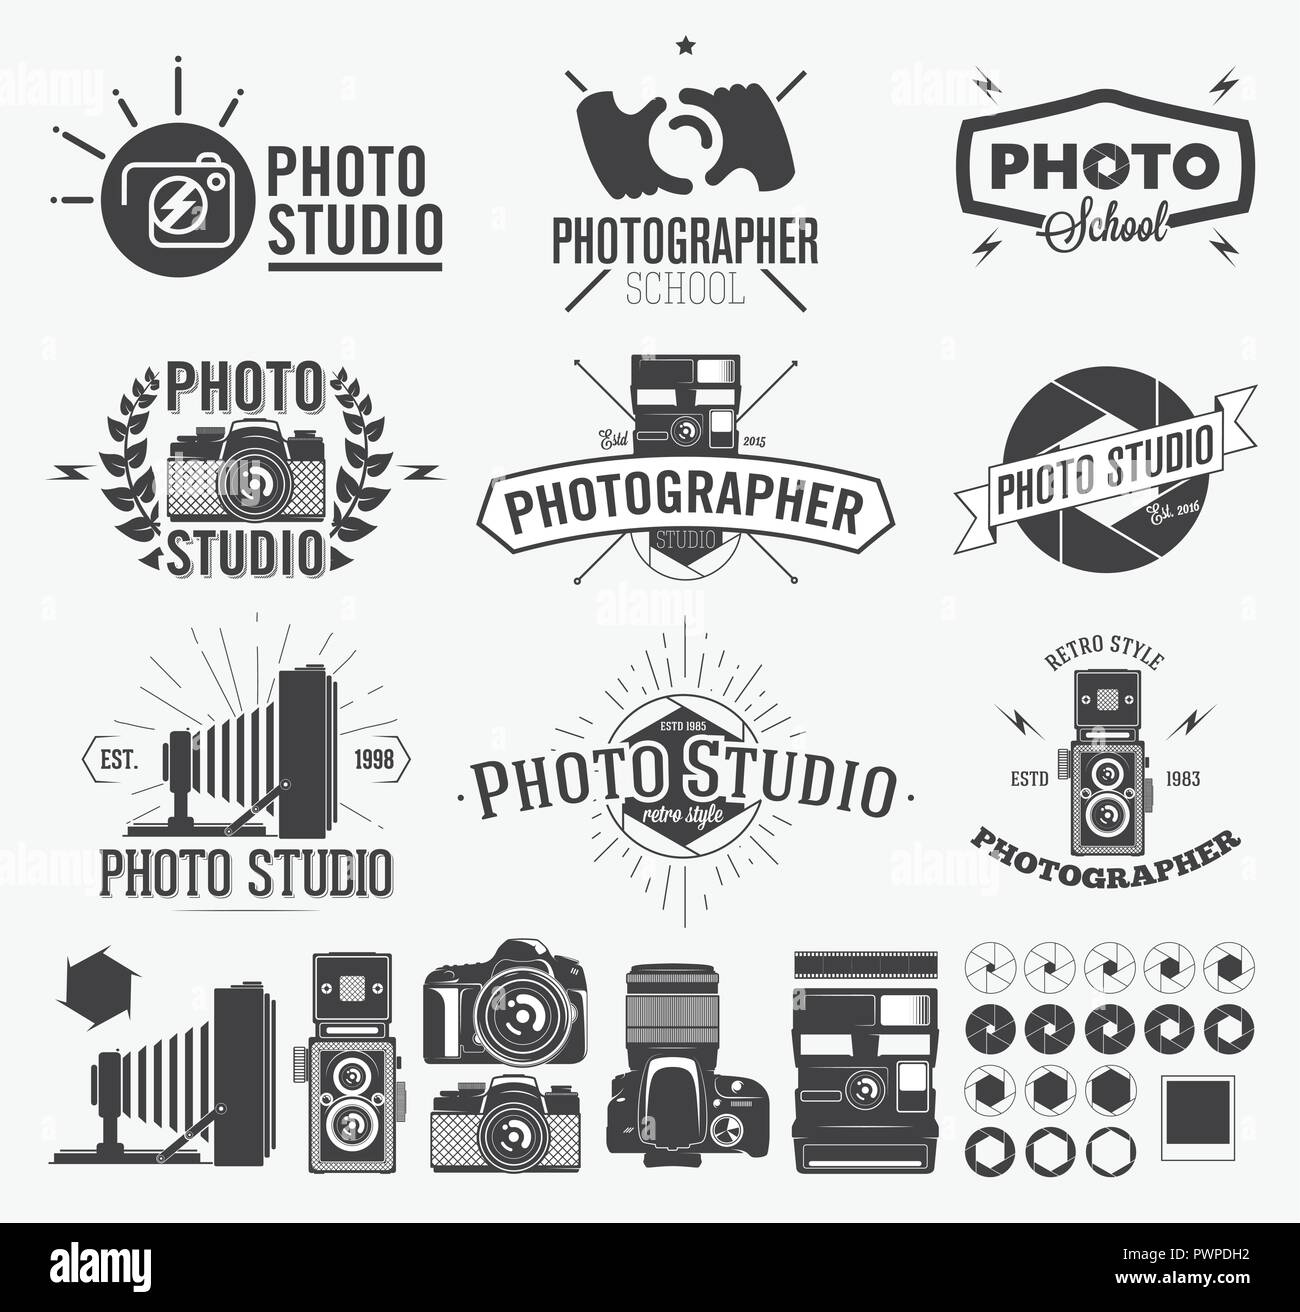 Fotografie Und Foto Studio Logo Klassische Kamera Etiketten Vorlage Fur Ihr Design Stock Vektorgrafik Alamy